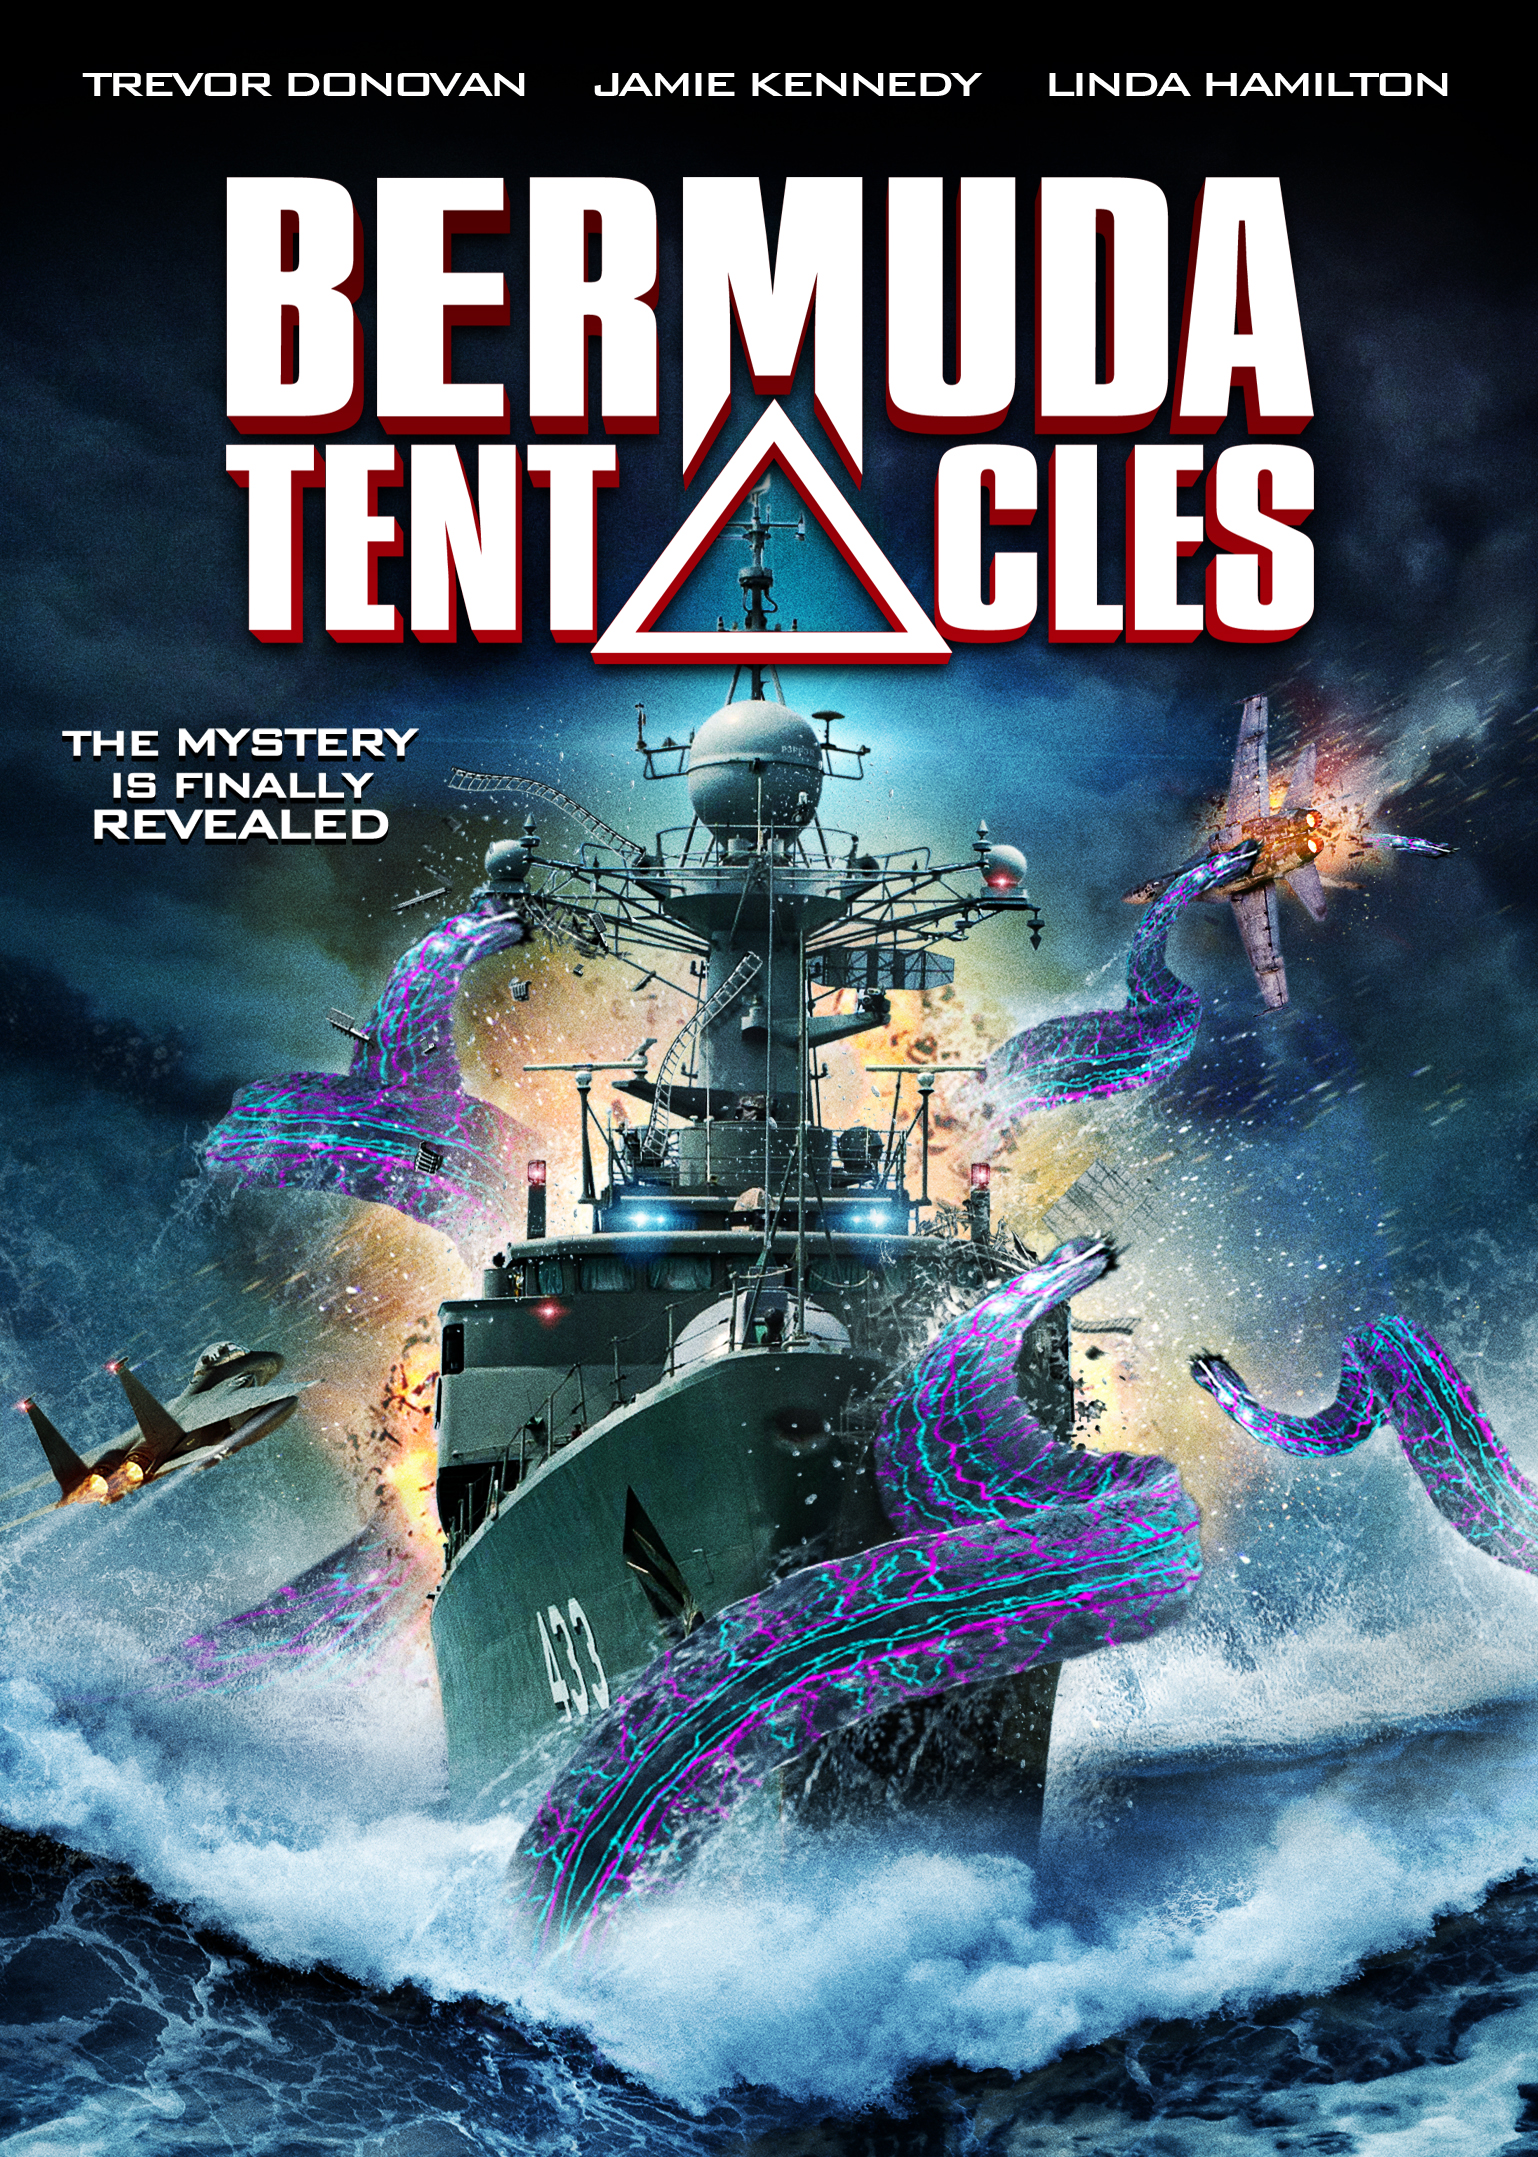 Bermuda Tentacles (2014) Screenshot 1